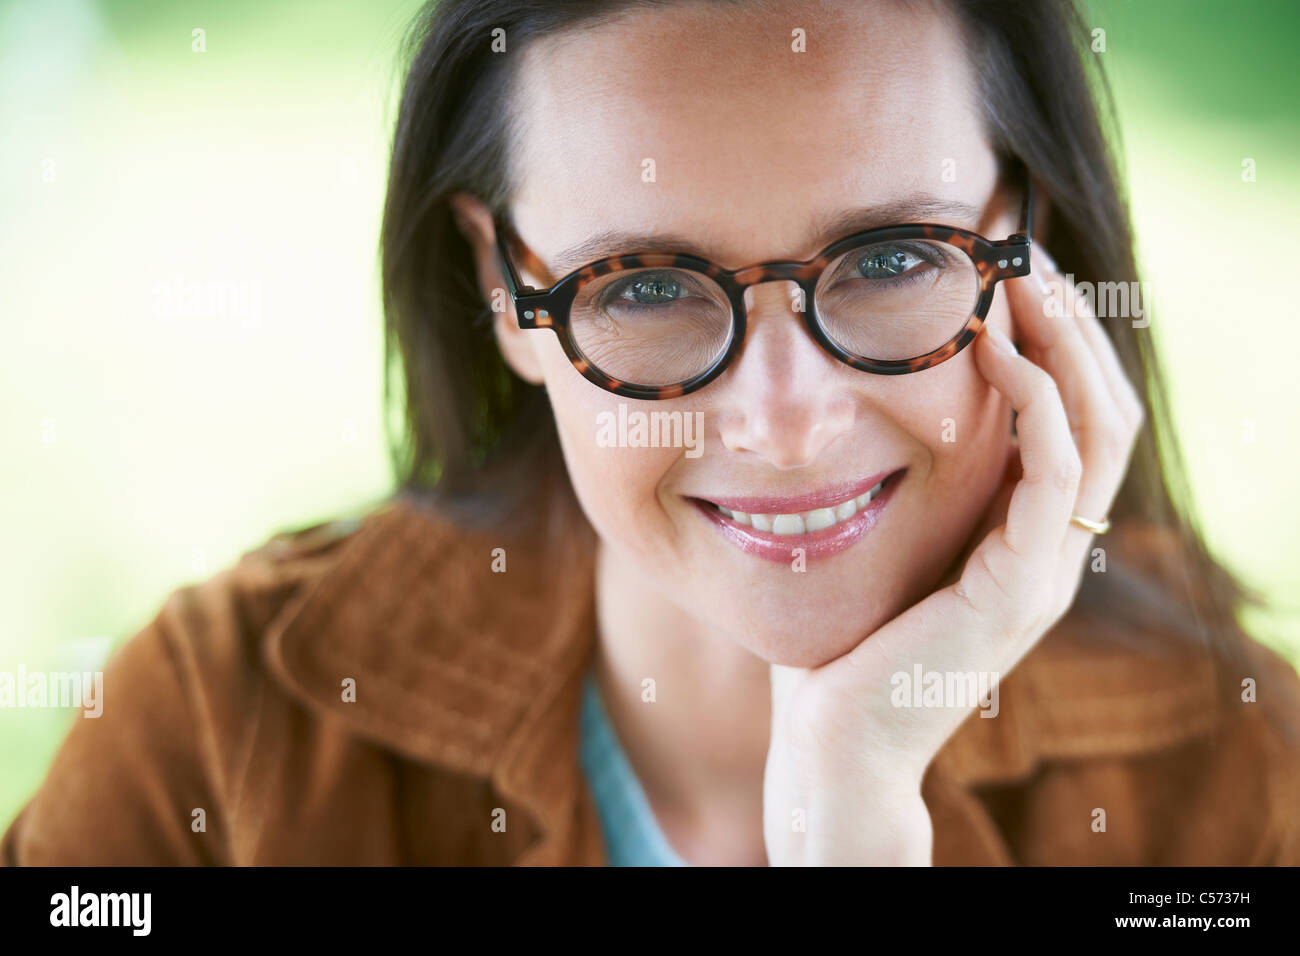 Smiling woman wearing eyeglasses Stock Photo